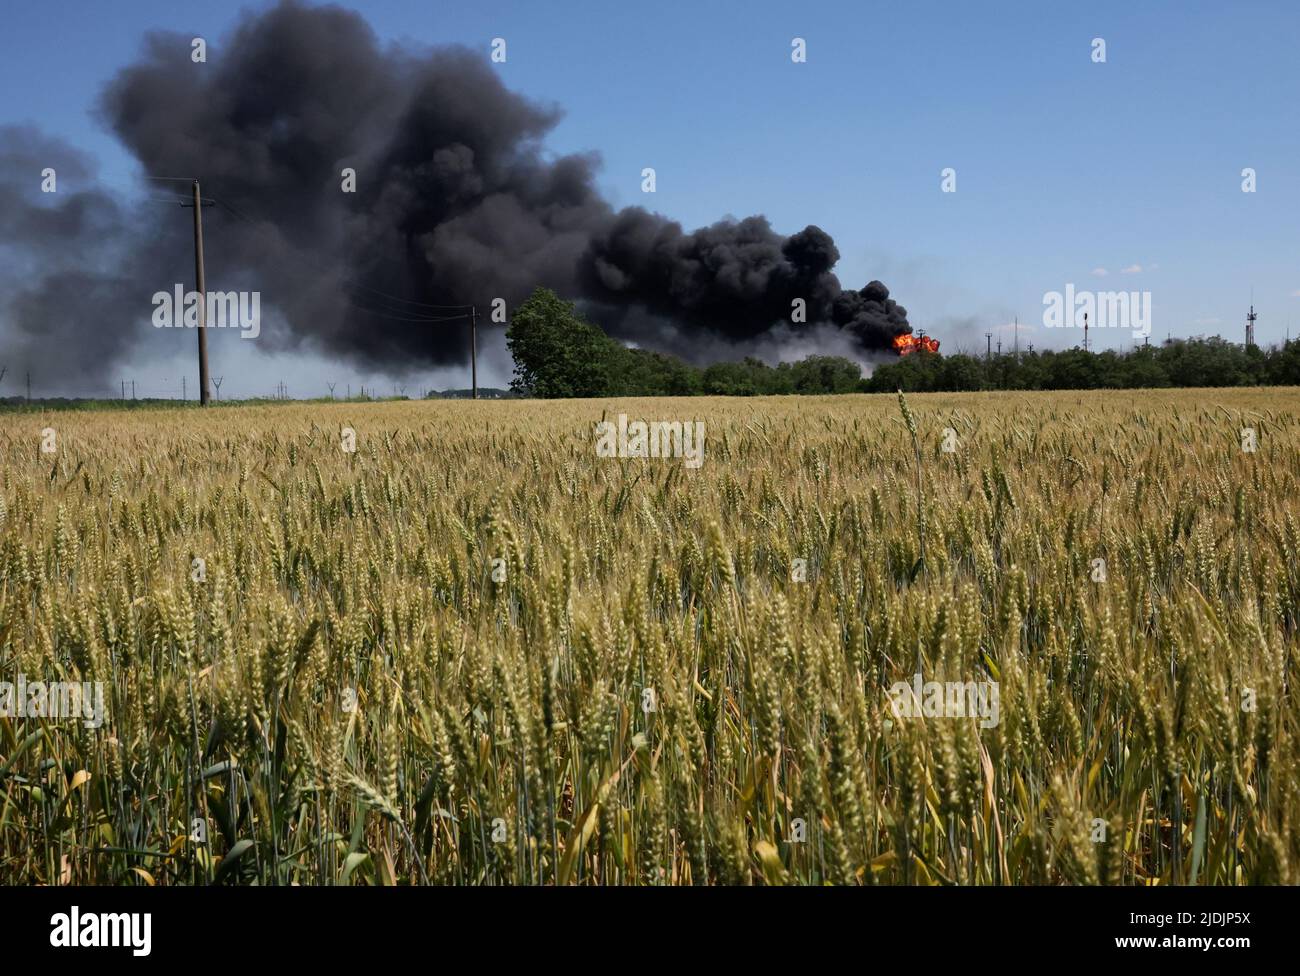 Un incendio proveniente da un impianto di lavorazione del gas continua a bruciare dietro un campo di grano dopo che l'impianto è stato colpito dalla sgranatura pochi giorni prima ad Andriivka, nella regione di Kharkiv, mentre l'attacco della Russia all'Ucraina continua in Ucraina, il 21 giugno 2022. REUTERS/Leah Millis Foto Stock